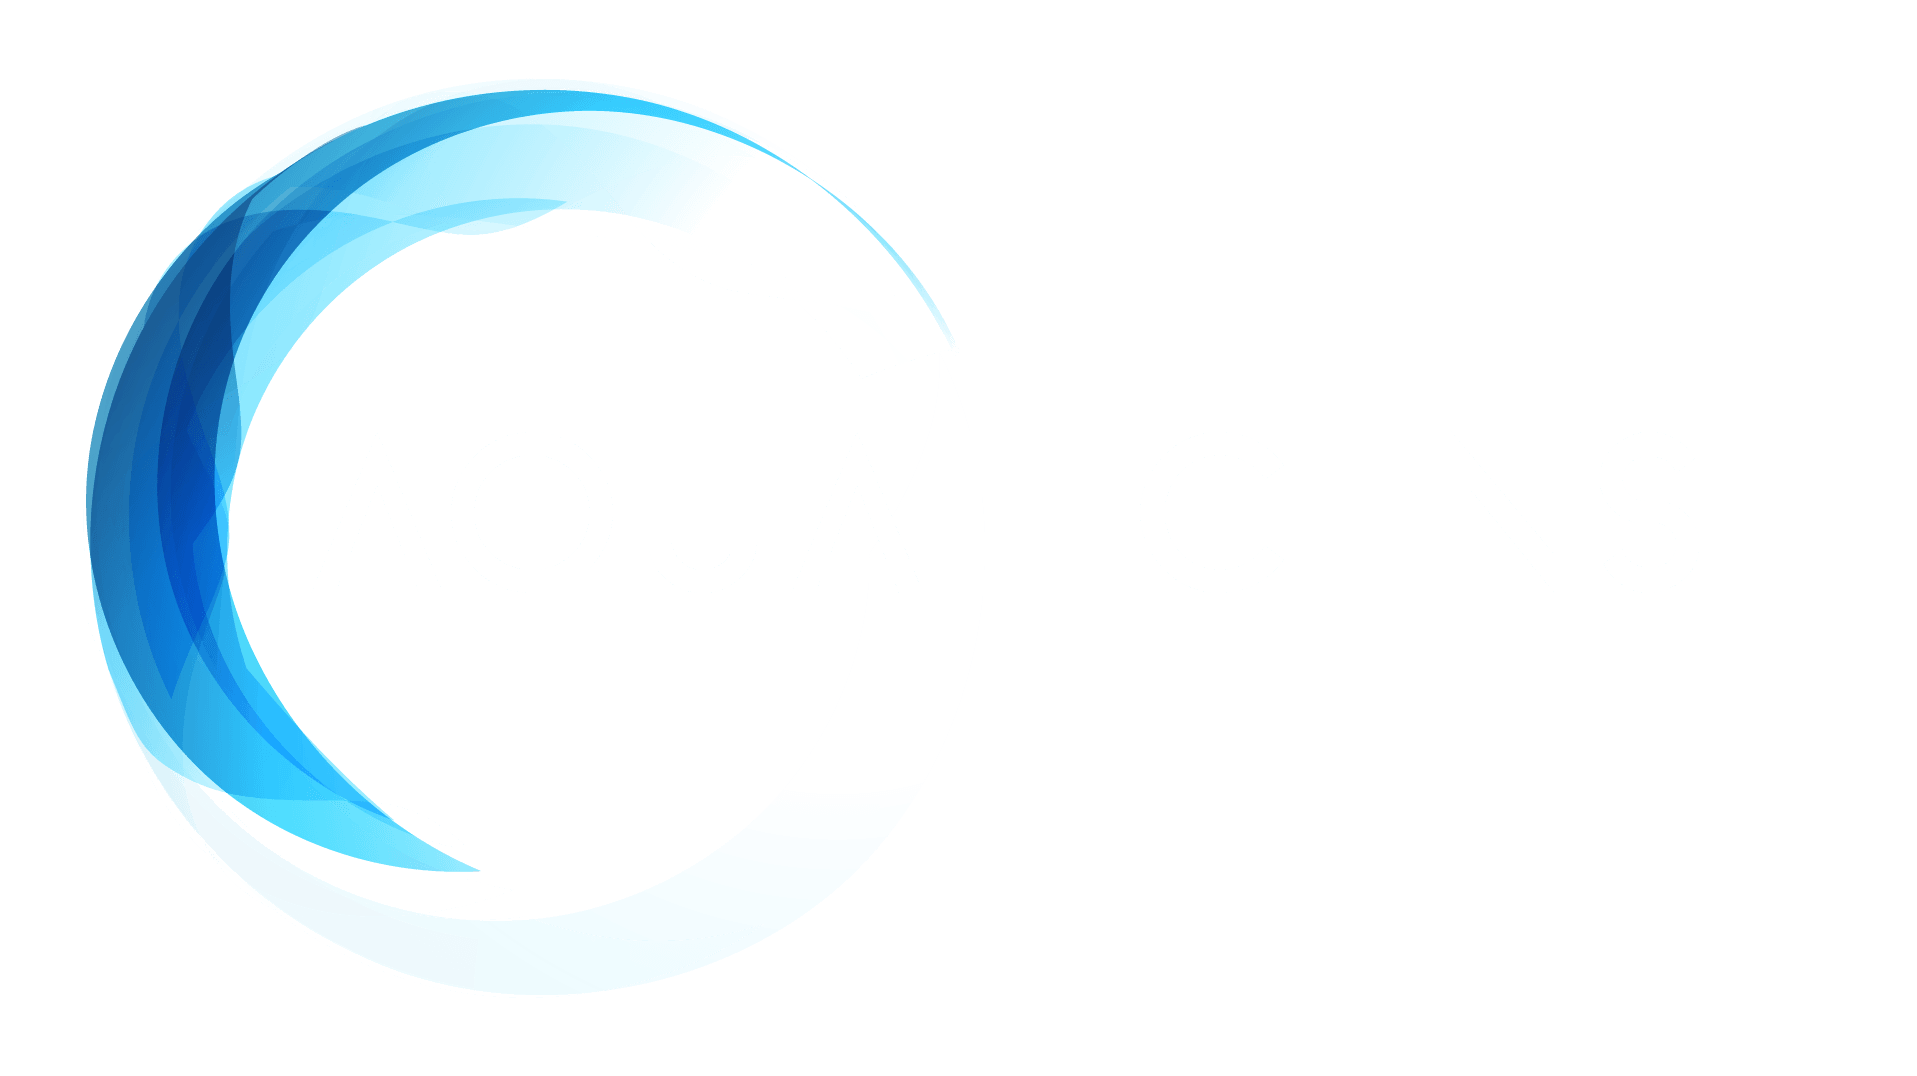 Aqualicense